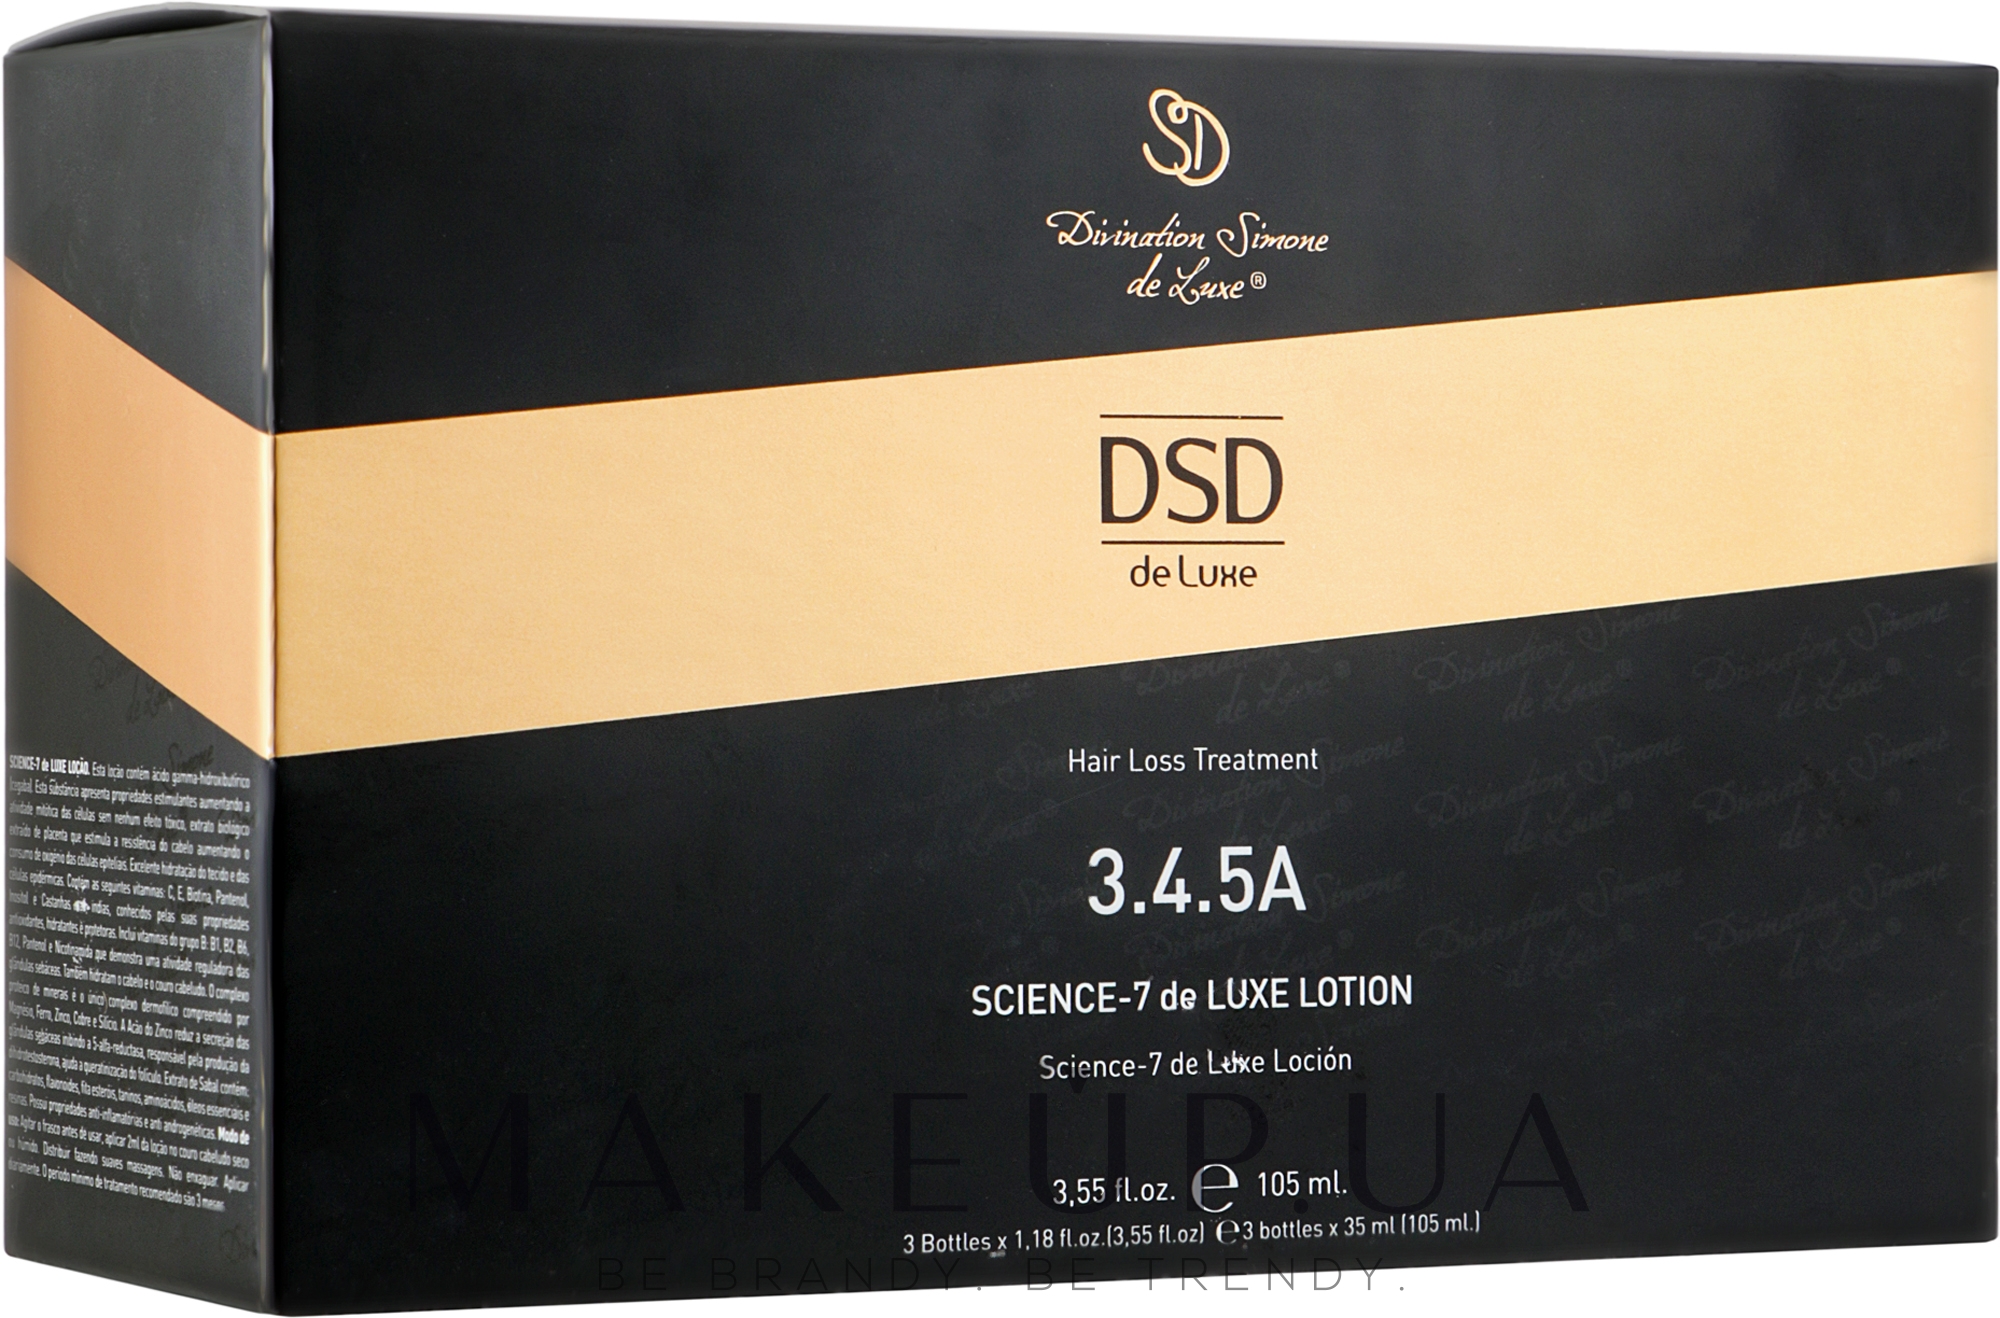 Лосьон Сайенс-7 Де Люкс № 3.4.5 А - Simone DSD De Luxe Science-7 DeLuxe Lotion — фото 3x35ml